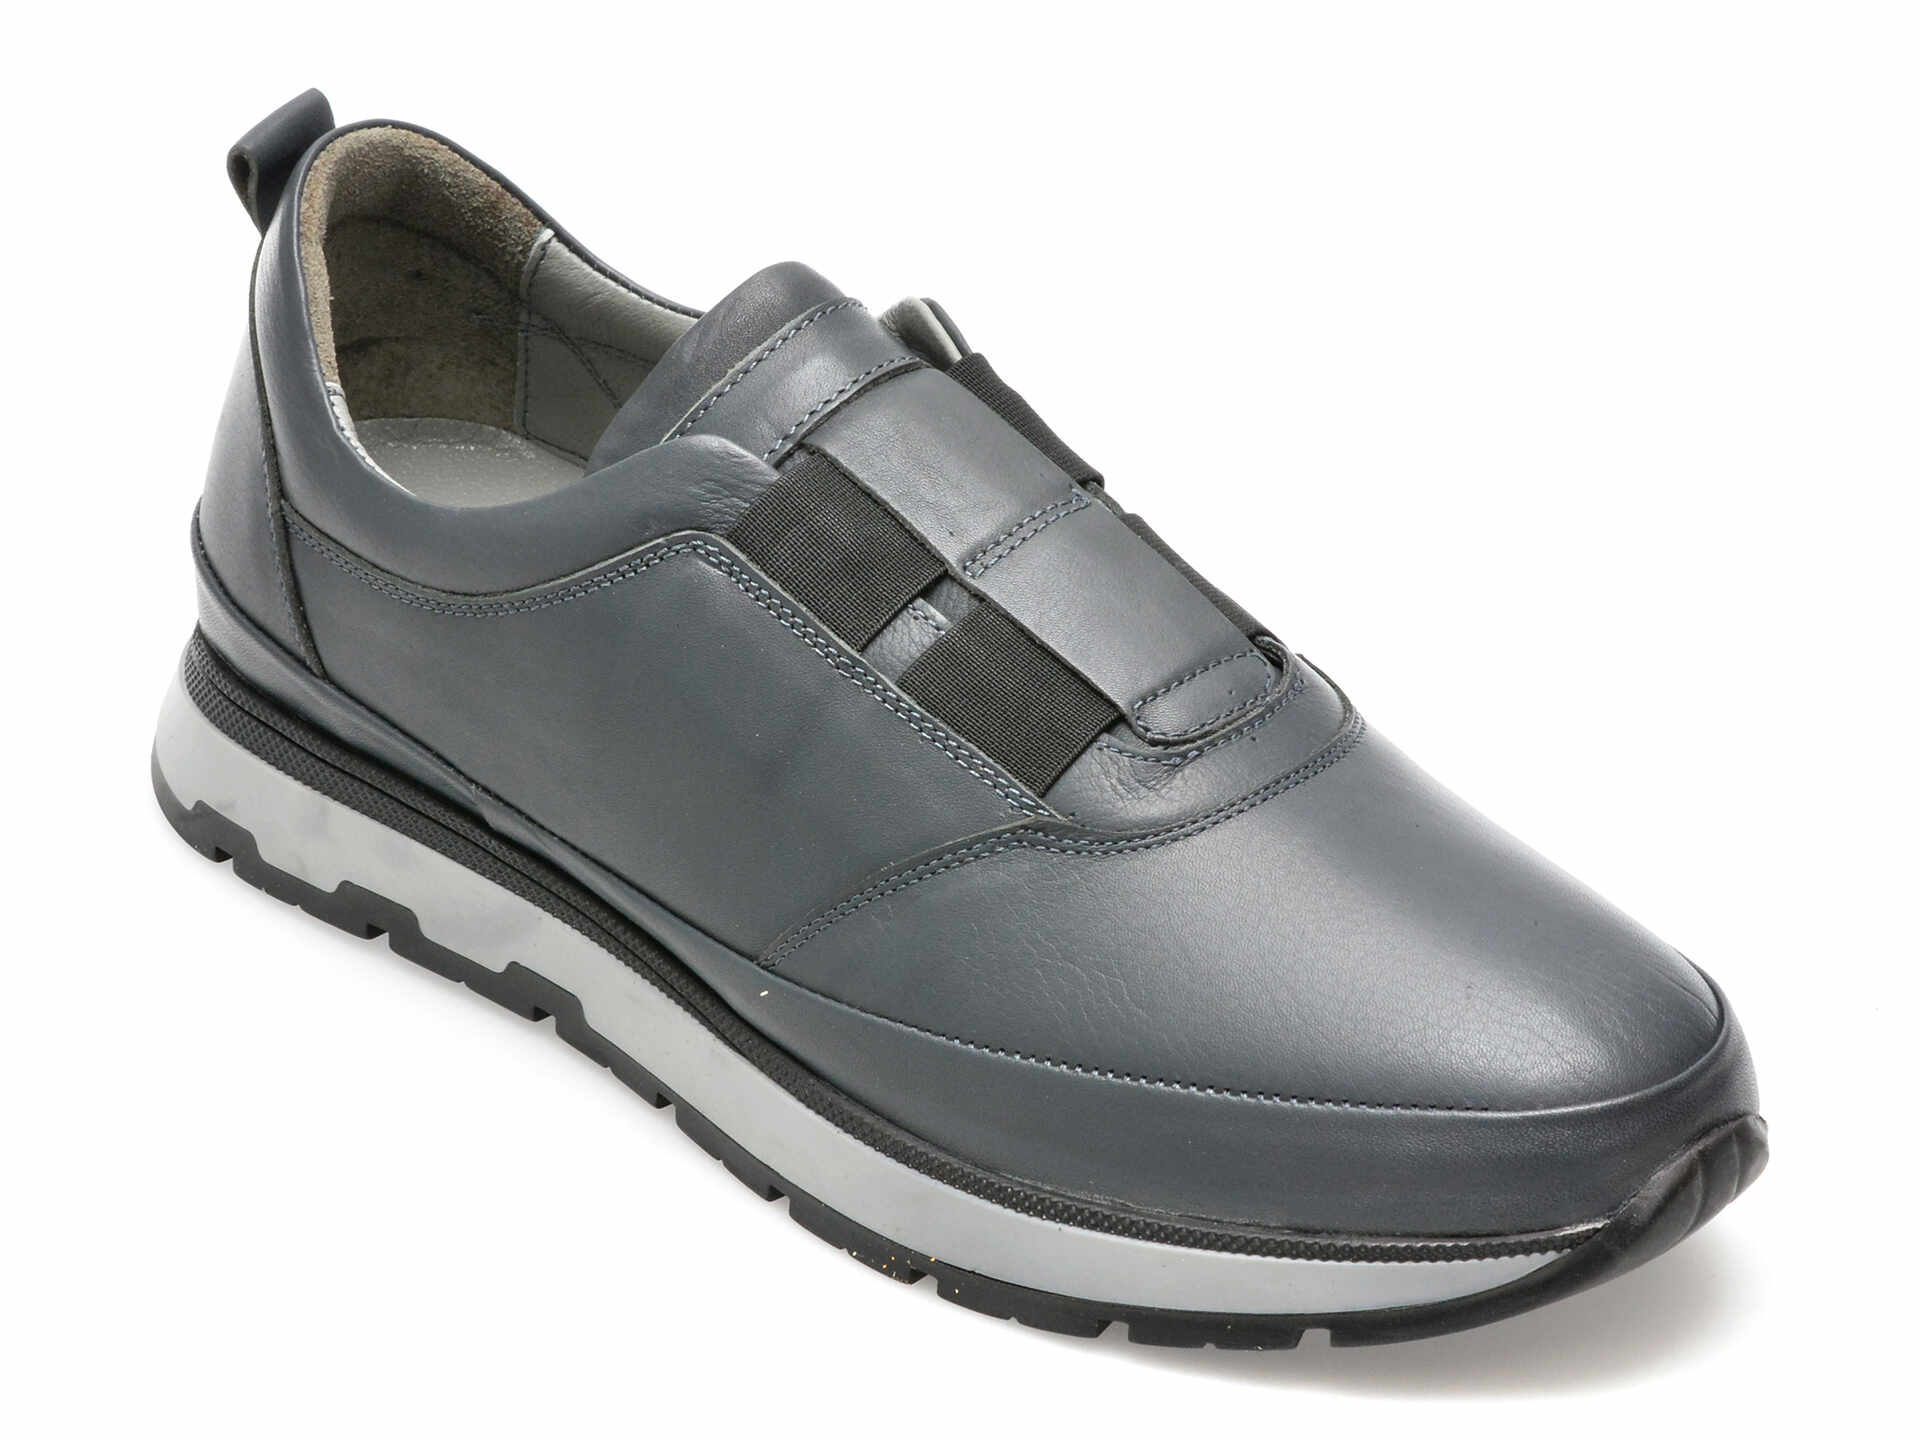 Pantofi AXXELLL gri, SY701, din piele naturala